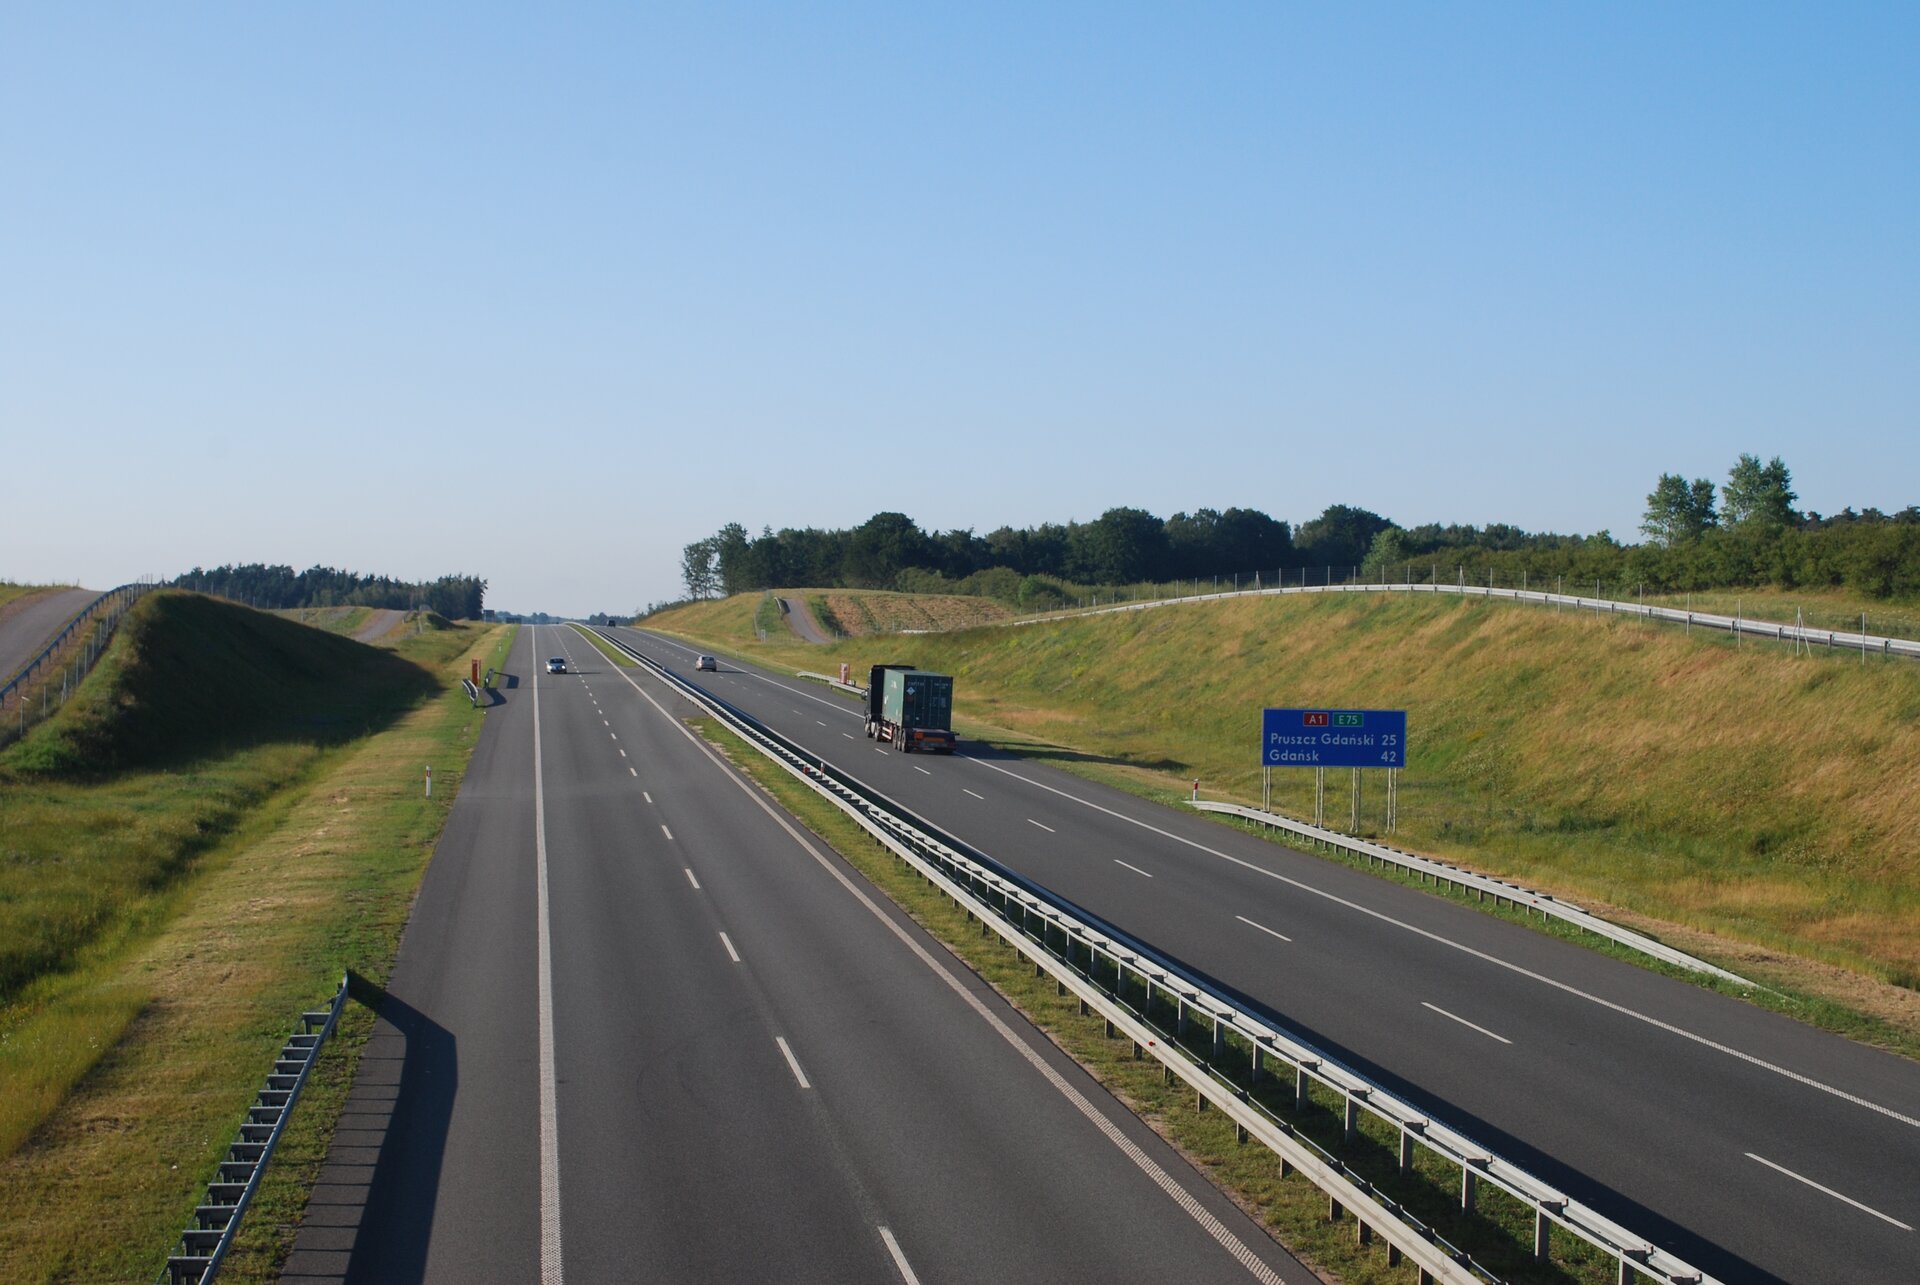 Na zdjęciu prosty odcinek autostrady, dwa pasy drogi i pobocze w każdym kierunku, ogrodzona siatką.